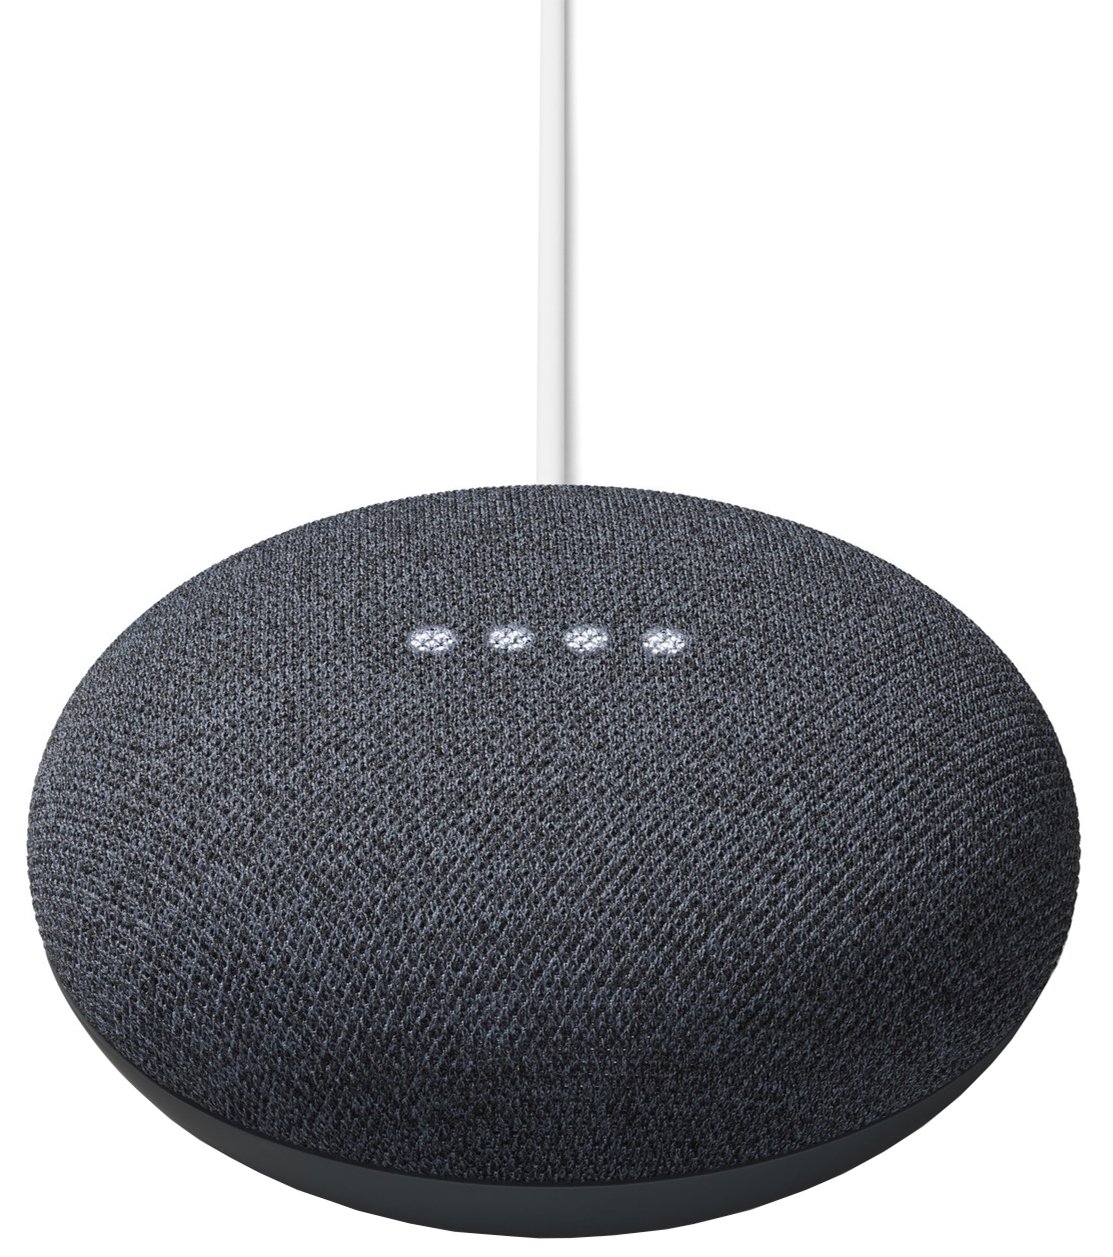 Buy Google Nest Mini Smart Speaker 